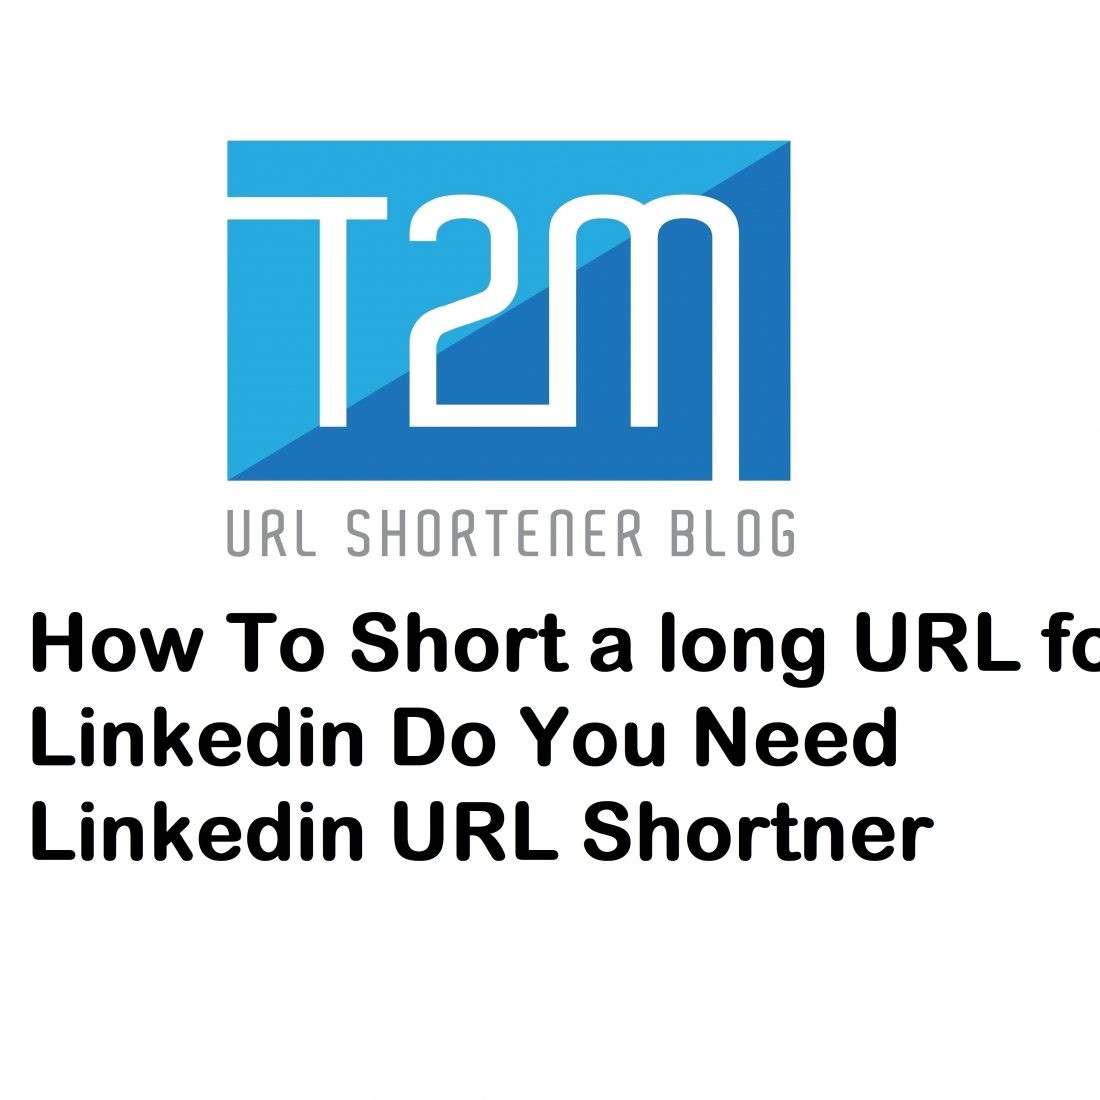 How To Short a long URL for Linkedin? Do You Need Linkedin URL Shortner?